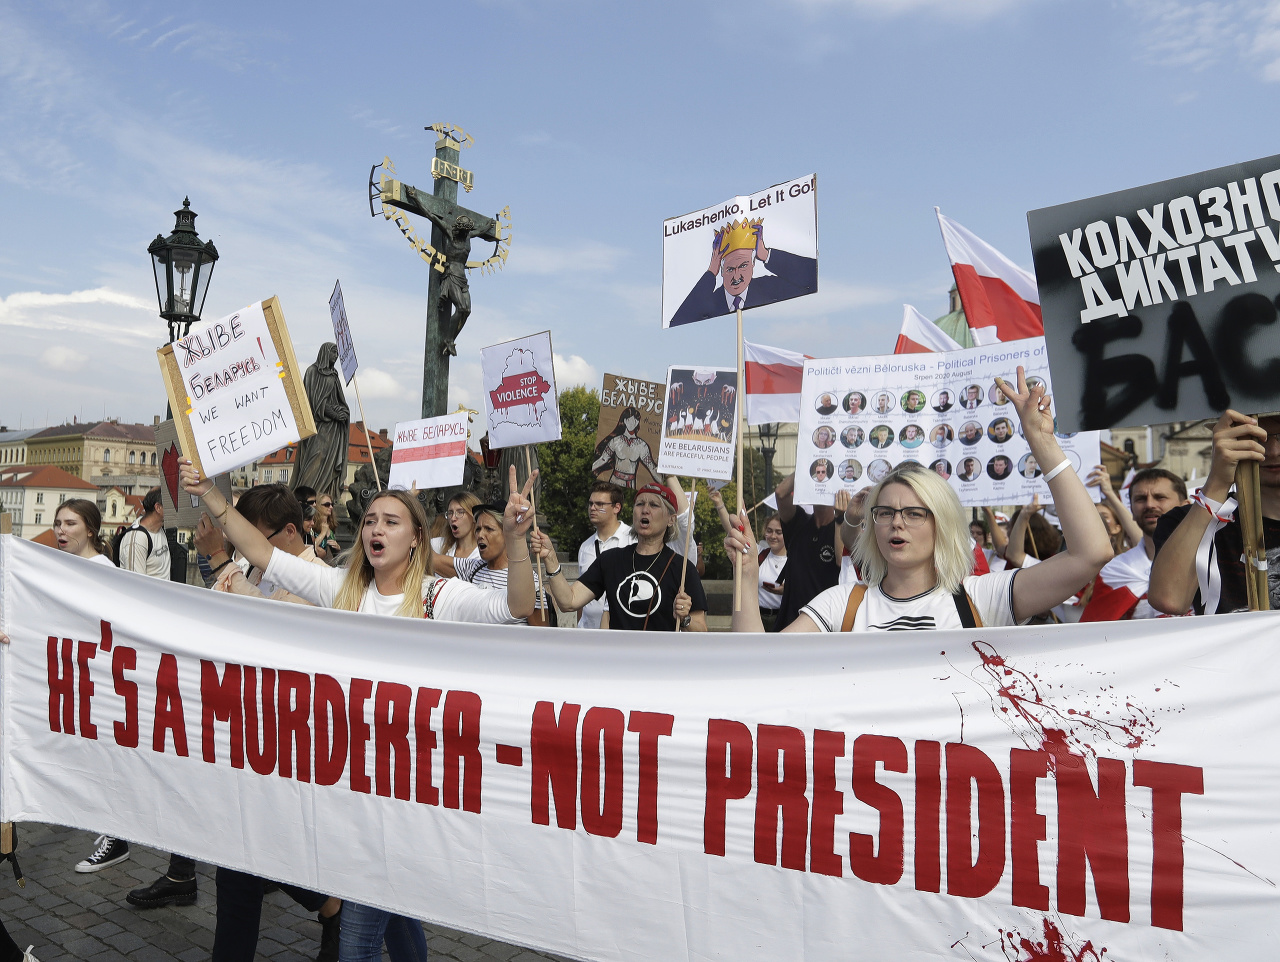 Protesty sa konali aj v Českej republike